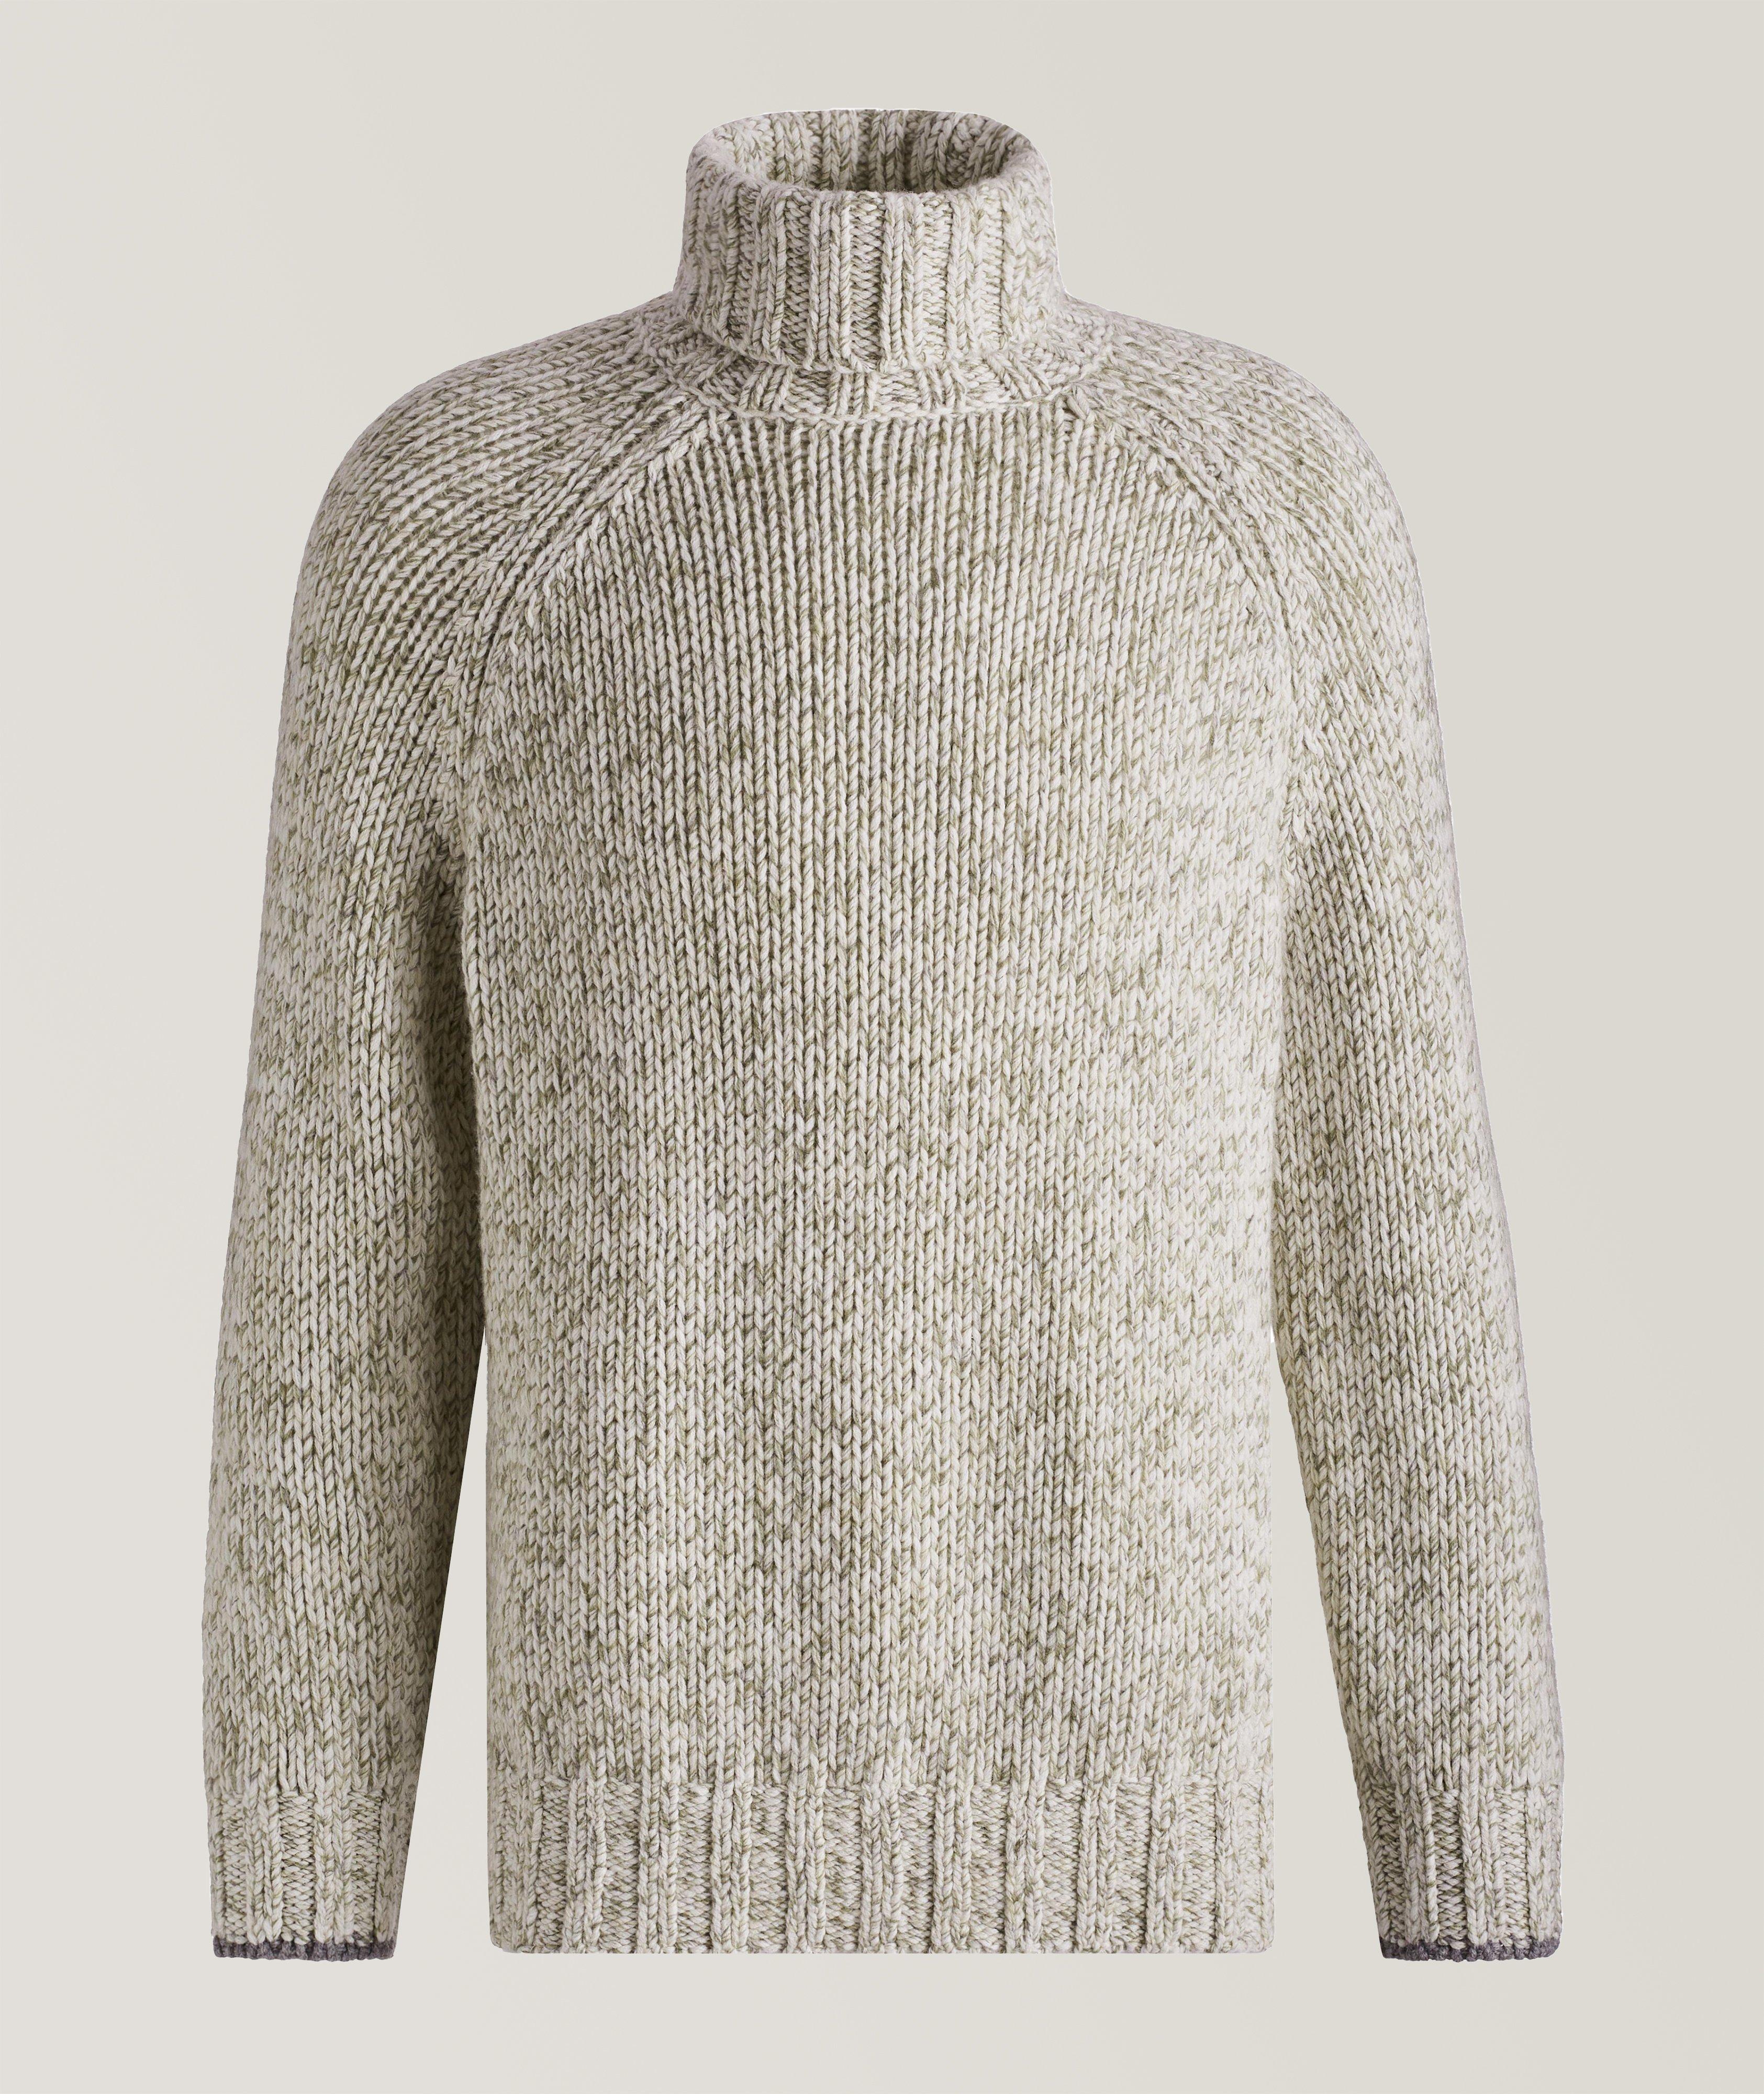 Pull en tricot de laine, cachemire et soie à col roulé image 0